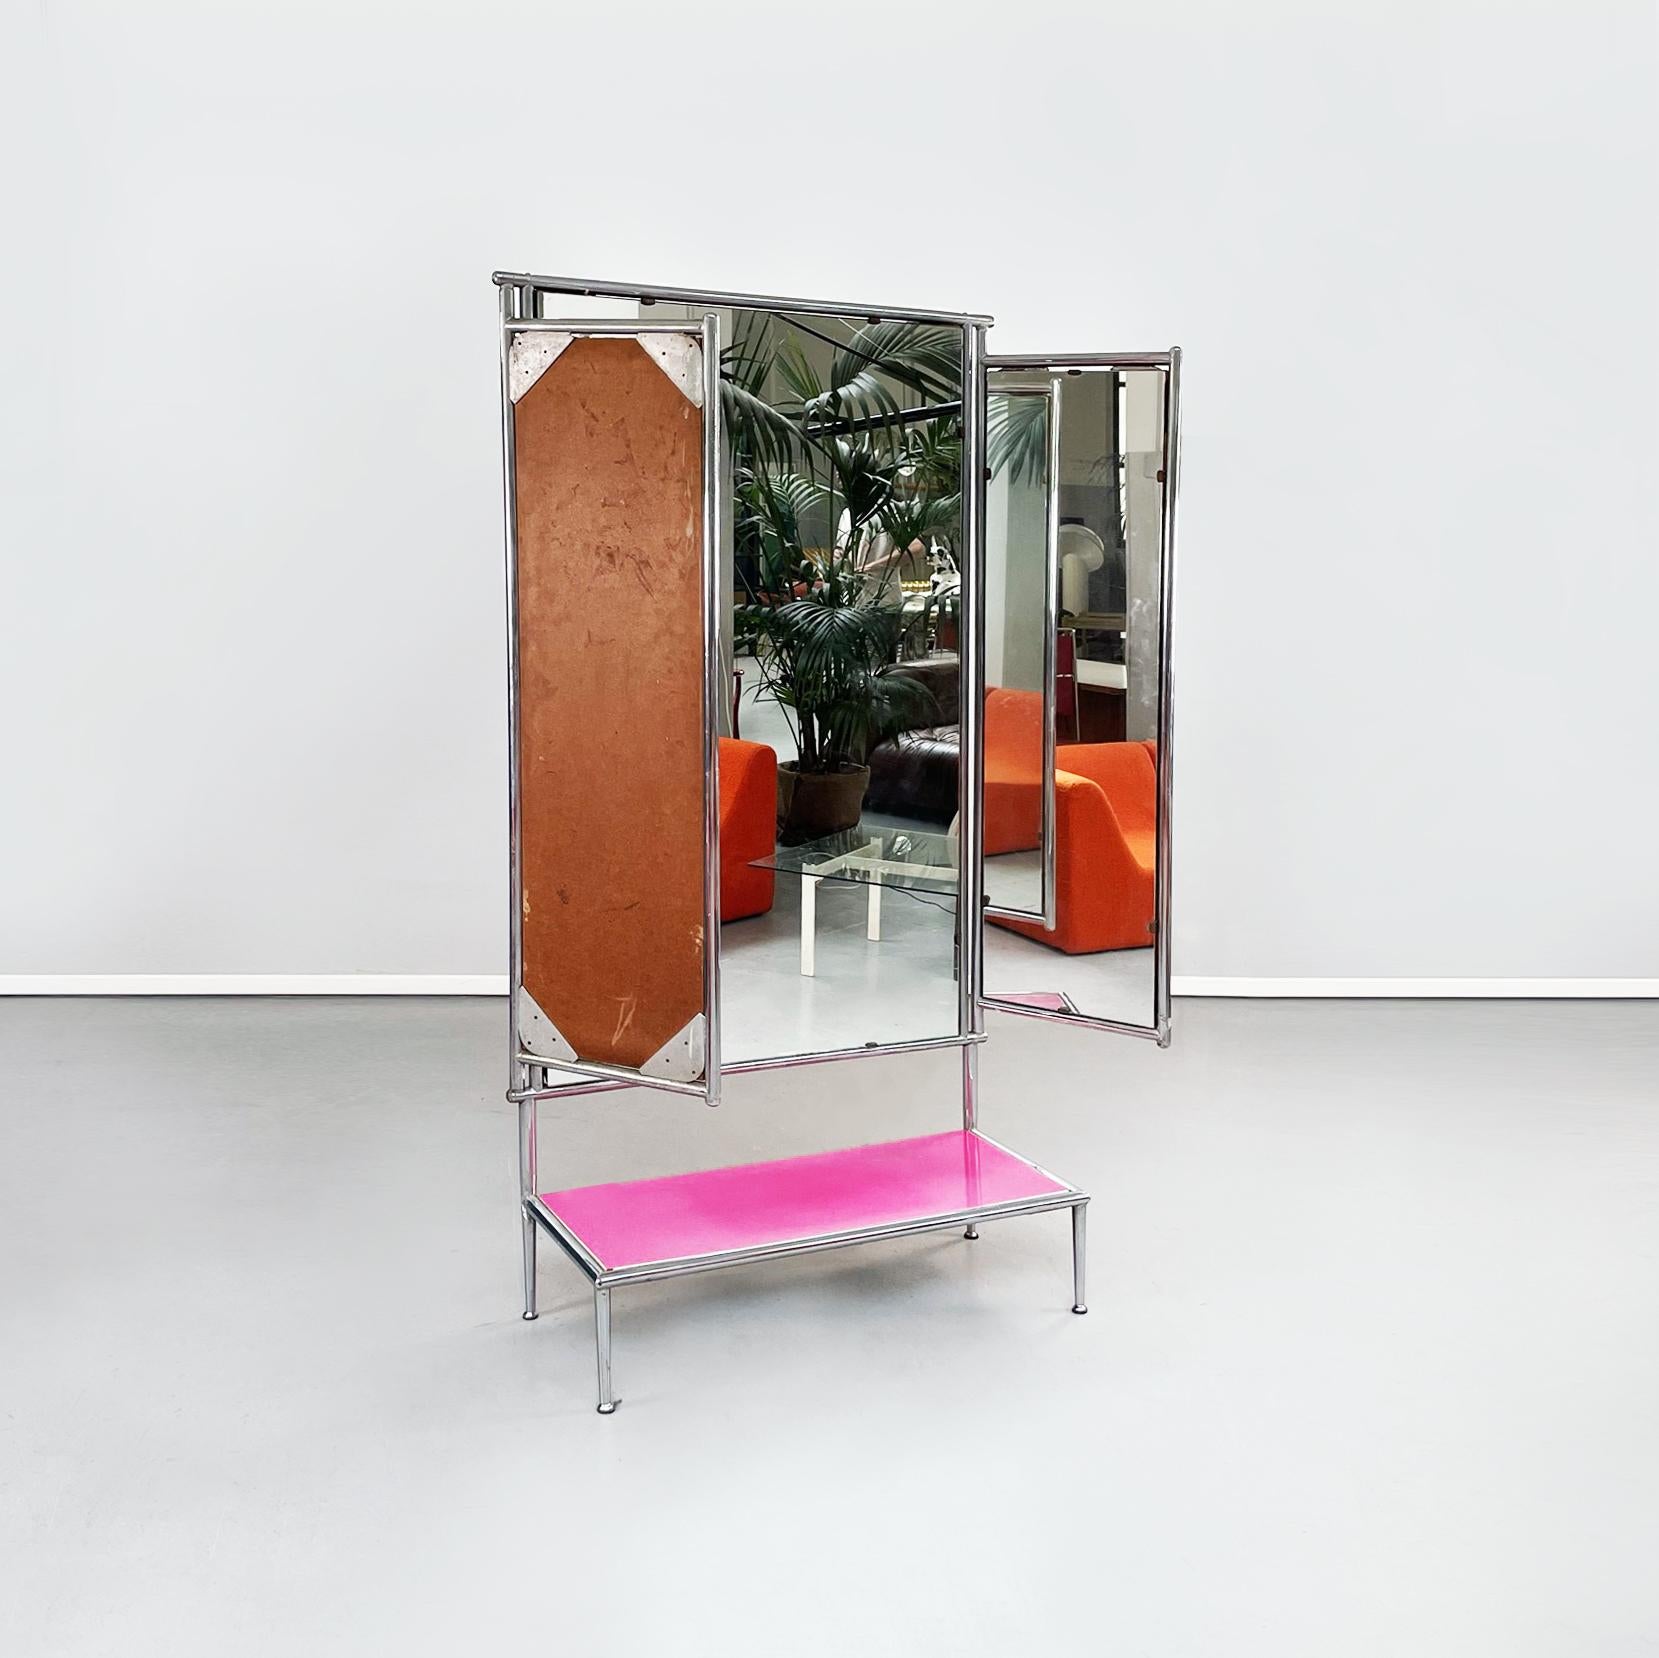 Miroir de sol moderne italien rose en bois et métal tubulaire avec 3 portes, 1980
Miroir au sol avec 3 portes en métal. Les trois portes ont une structure tubulaire avec un dos en bois. Les portes latérales basculantes peuvent être fermées grâce